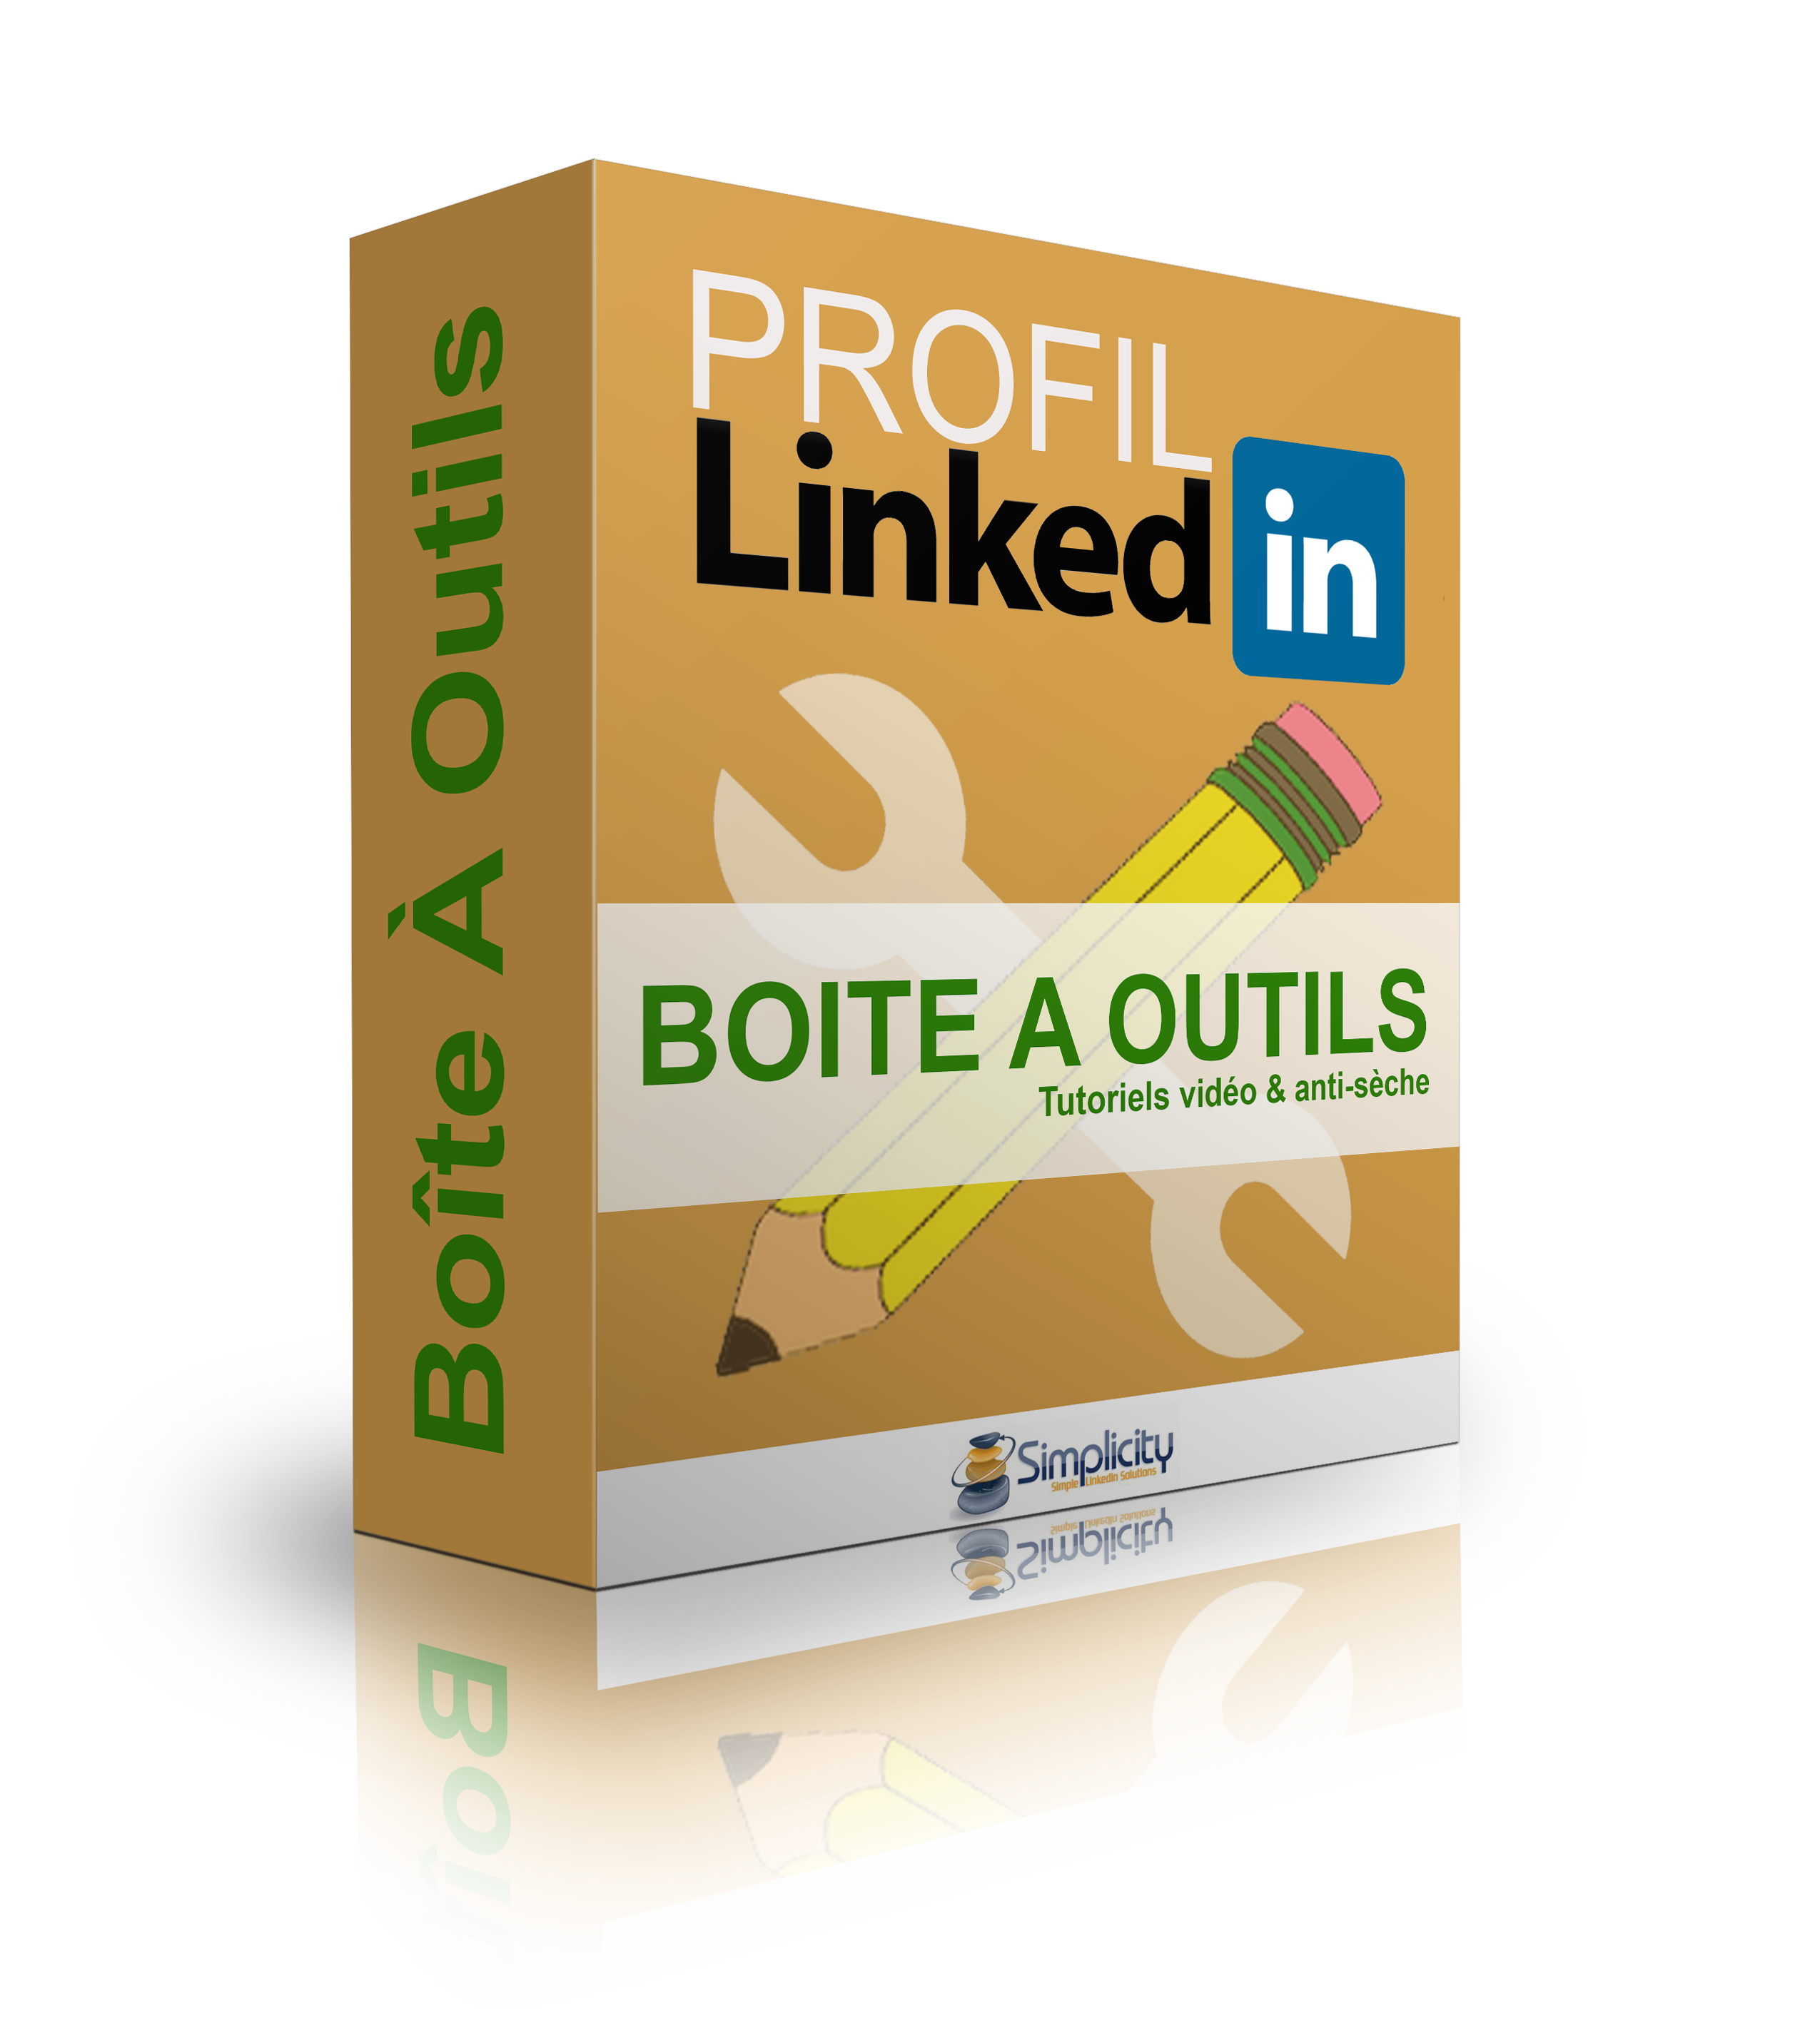 Boite a outils Profil LinkedIn